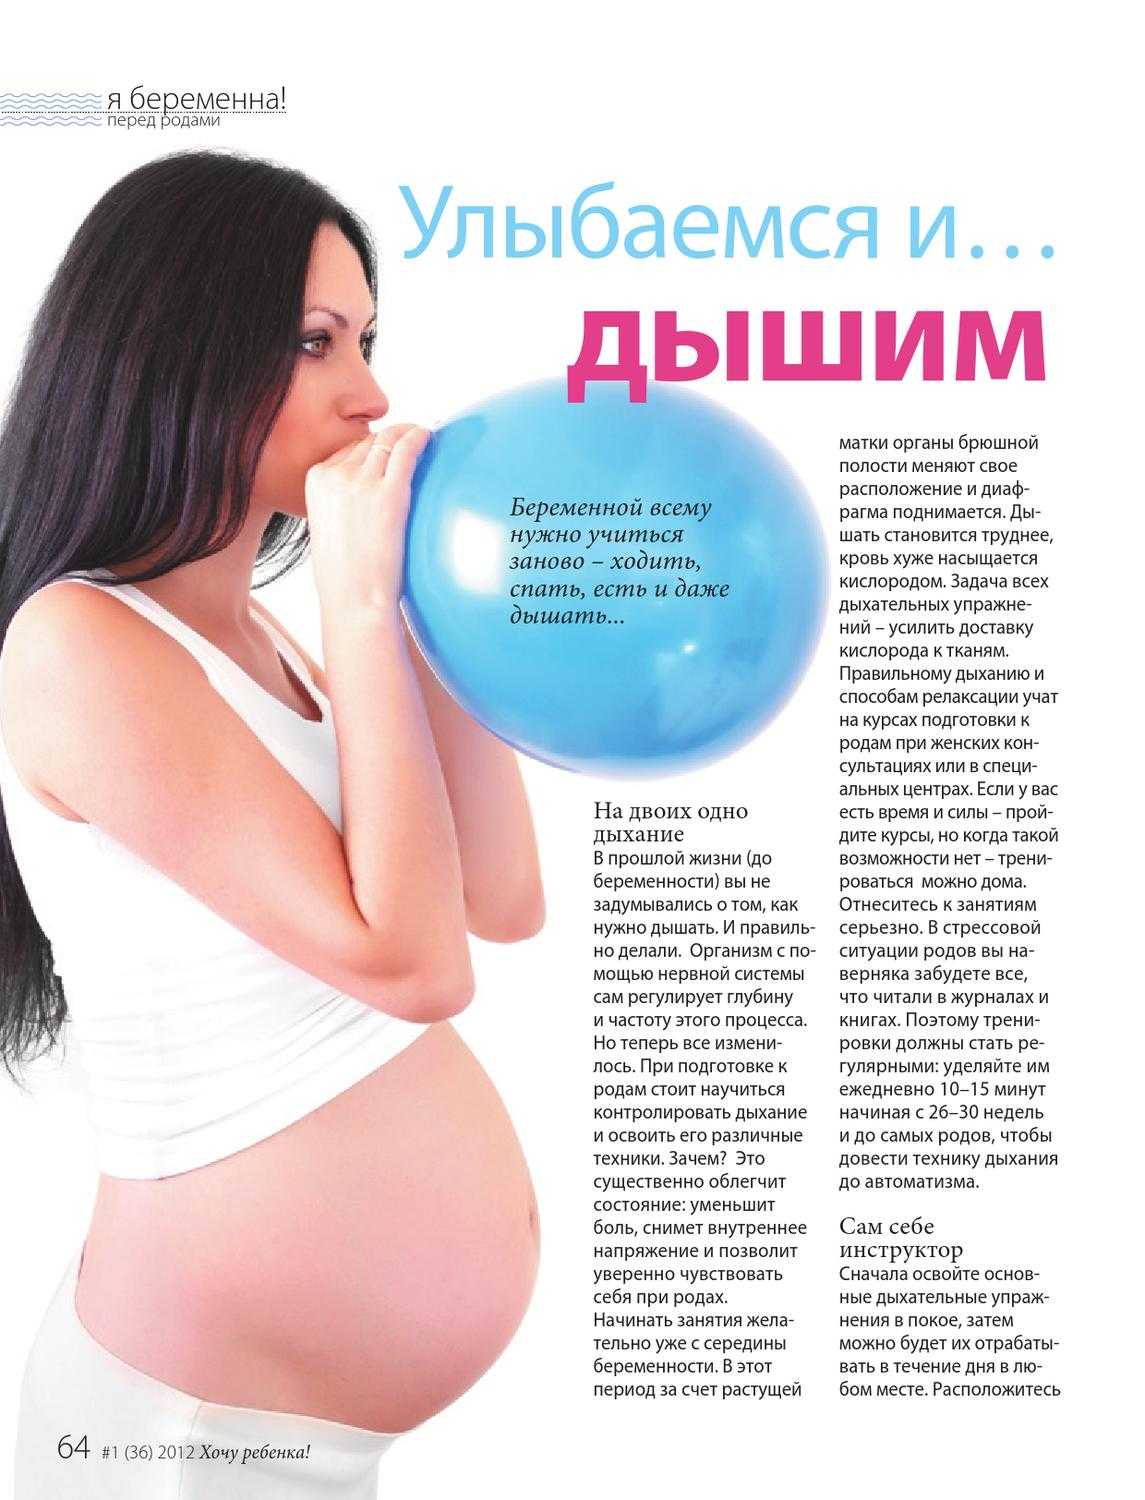 Можно тужиться при беременности. Техника дыхания в схватках и потугах. Методики дыхания при родах. Техника дыхания при родах и схватках. Правильное дыхание при родах.